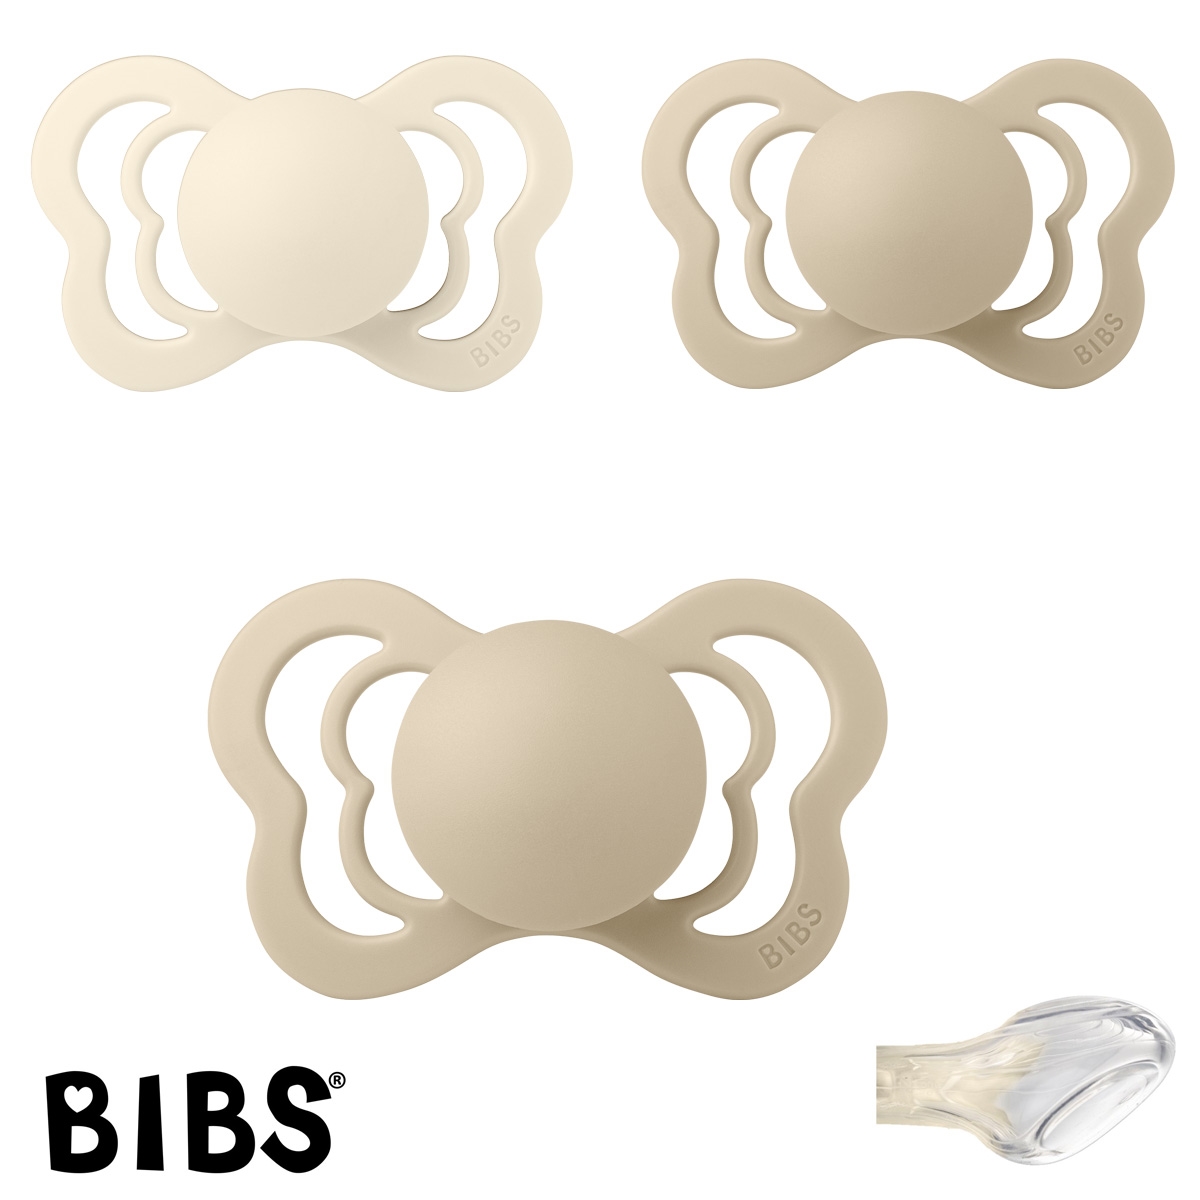 BIBS Couture Sutter med navn str2, 1 Ivory, 2 Vanilla, Anatomisk Silikone, Pakke med 3 sutter